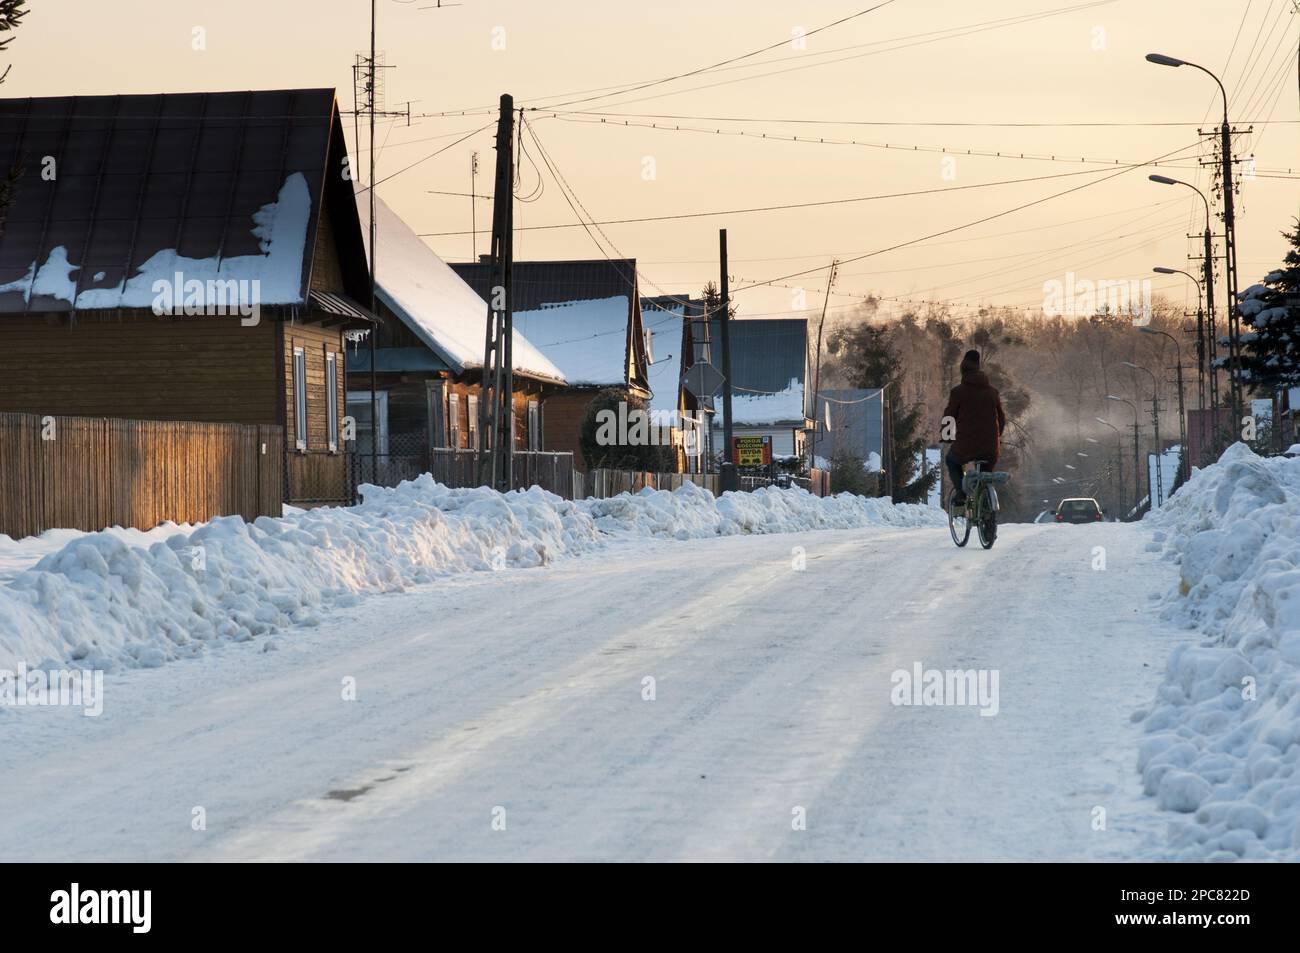 Cycliste sur route enneigée, maisons traditionnelles en bois et tas de neige défrichie, Bialowieza Village, Podlaskie Voivodeship, Pologne Banque D'Images